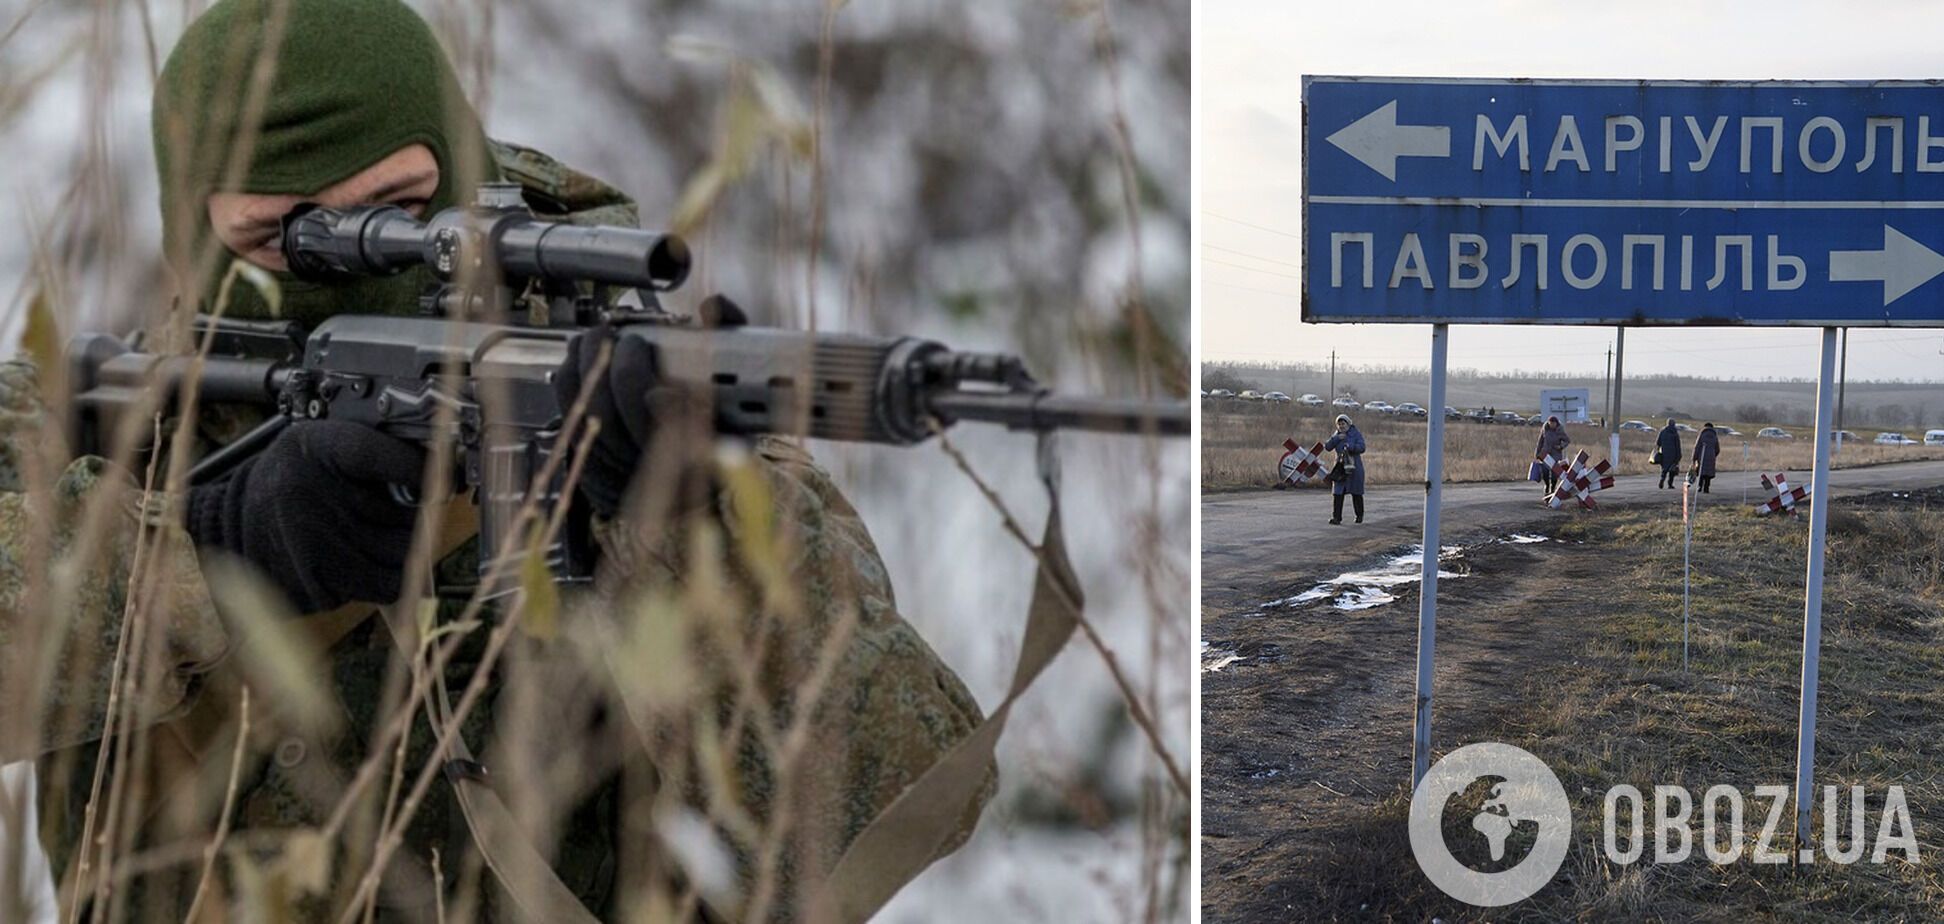 Росіяни посилили контроль над в'їздом в Маріуполь снайперами